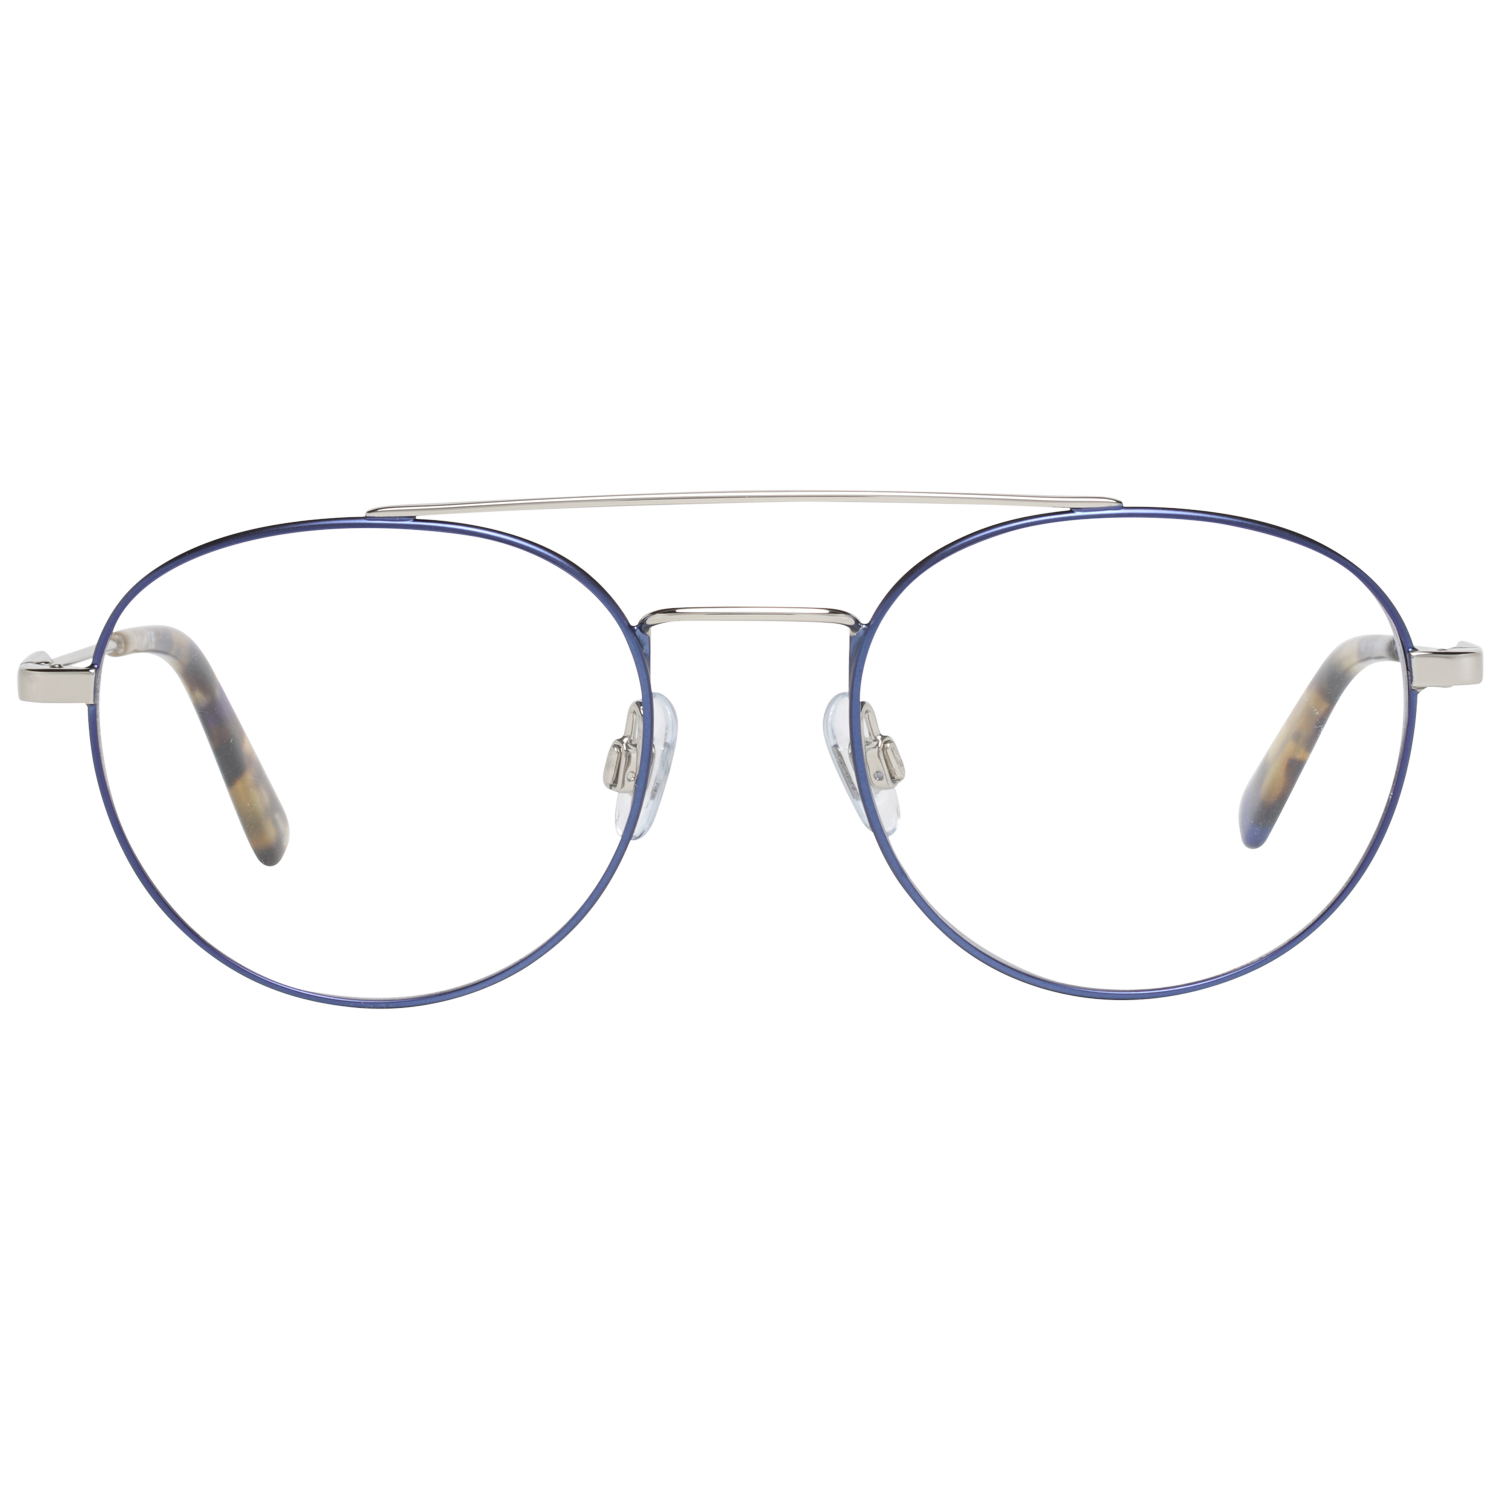 Web Frames Web Optical Frame WE5271 16B 51 Eyeglasses Eyewear UK USA Australia 